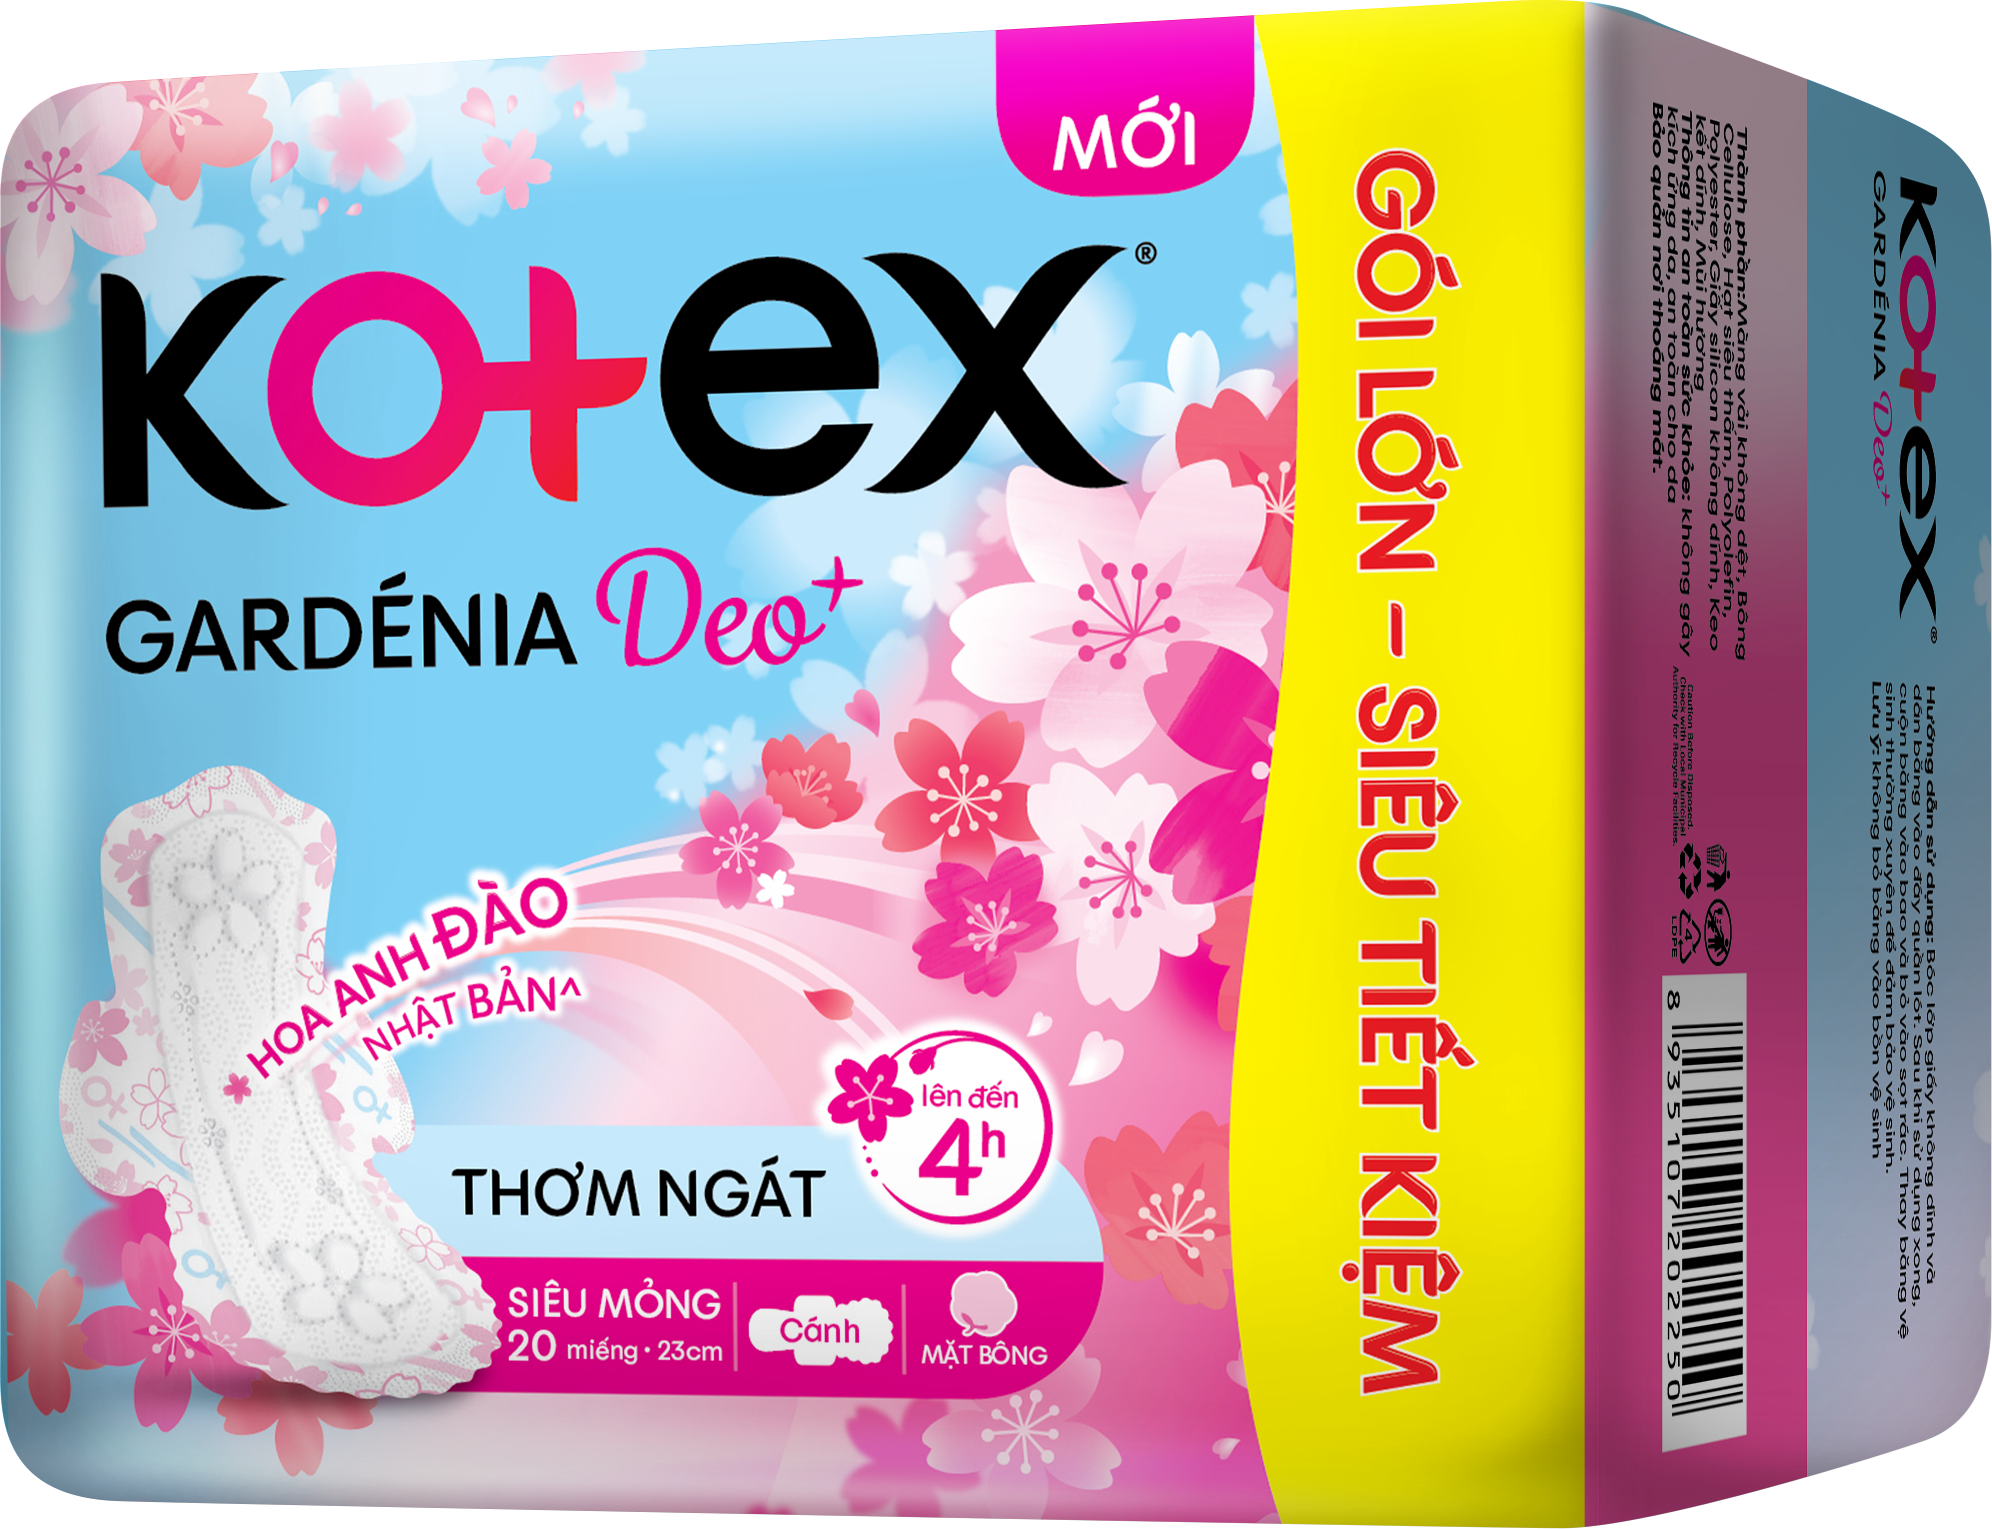 Kotex Gardenia Deo+ Hoa Anh Đào Nhật Bản